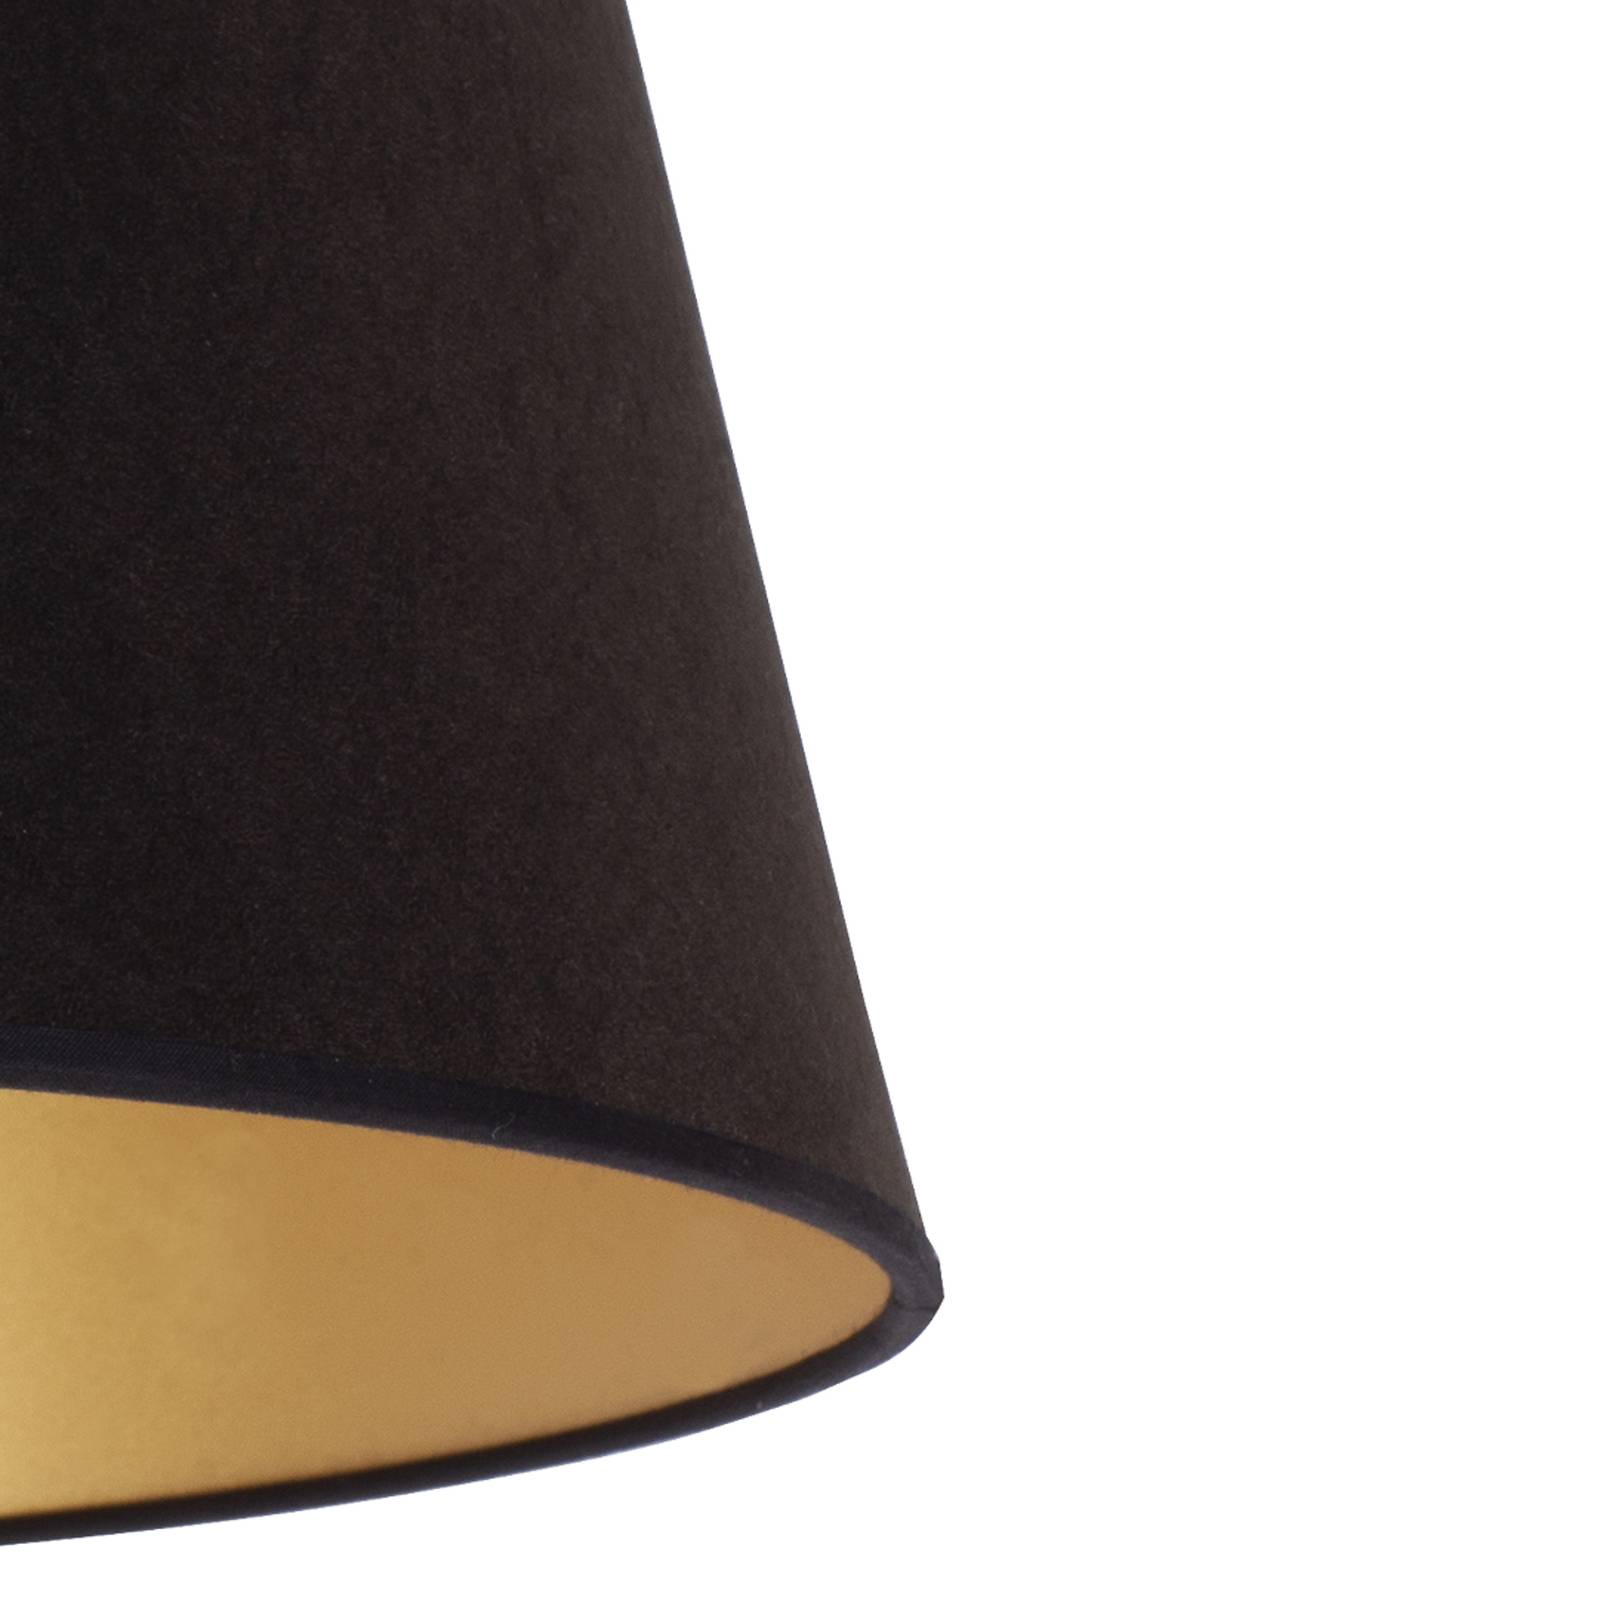 Duolla Cone lampeskærm højde 18 cm sort/guld